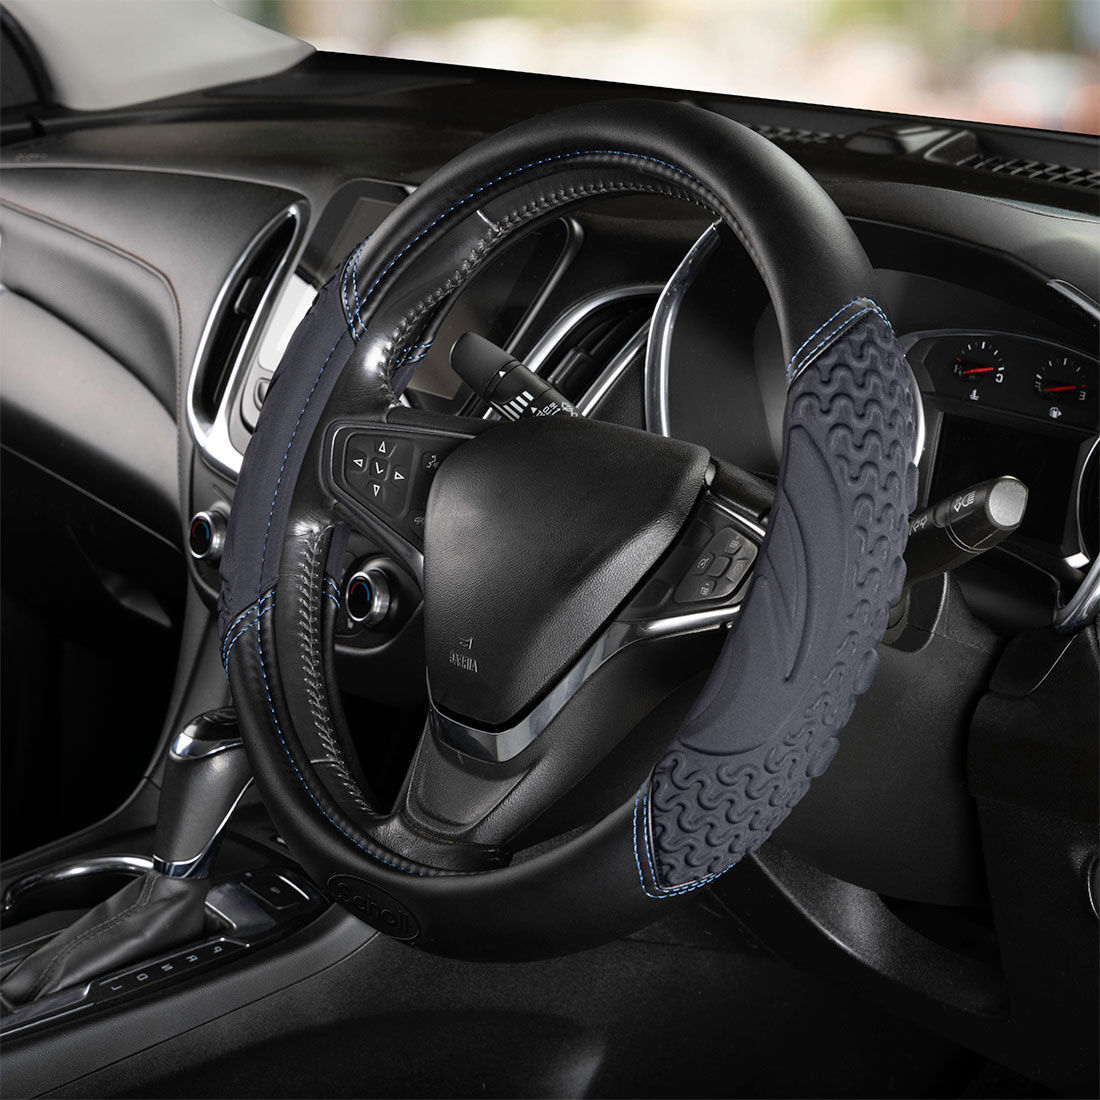 Scholls Infused Memory Foam Black Steering Wheel Cover, , scaau_hi-res